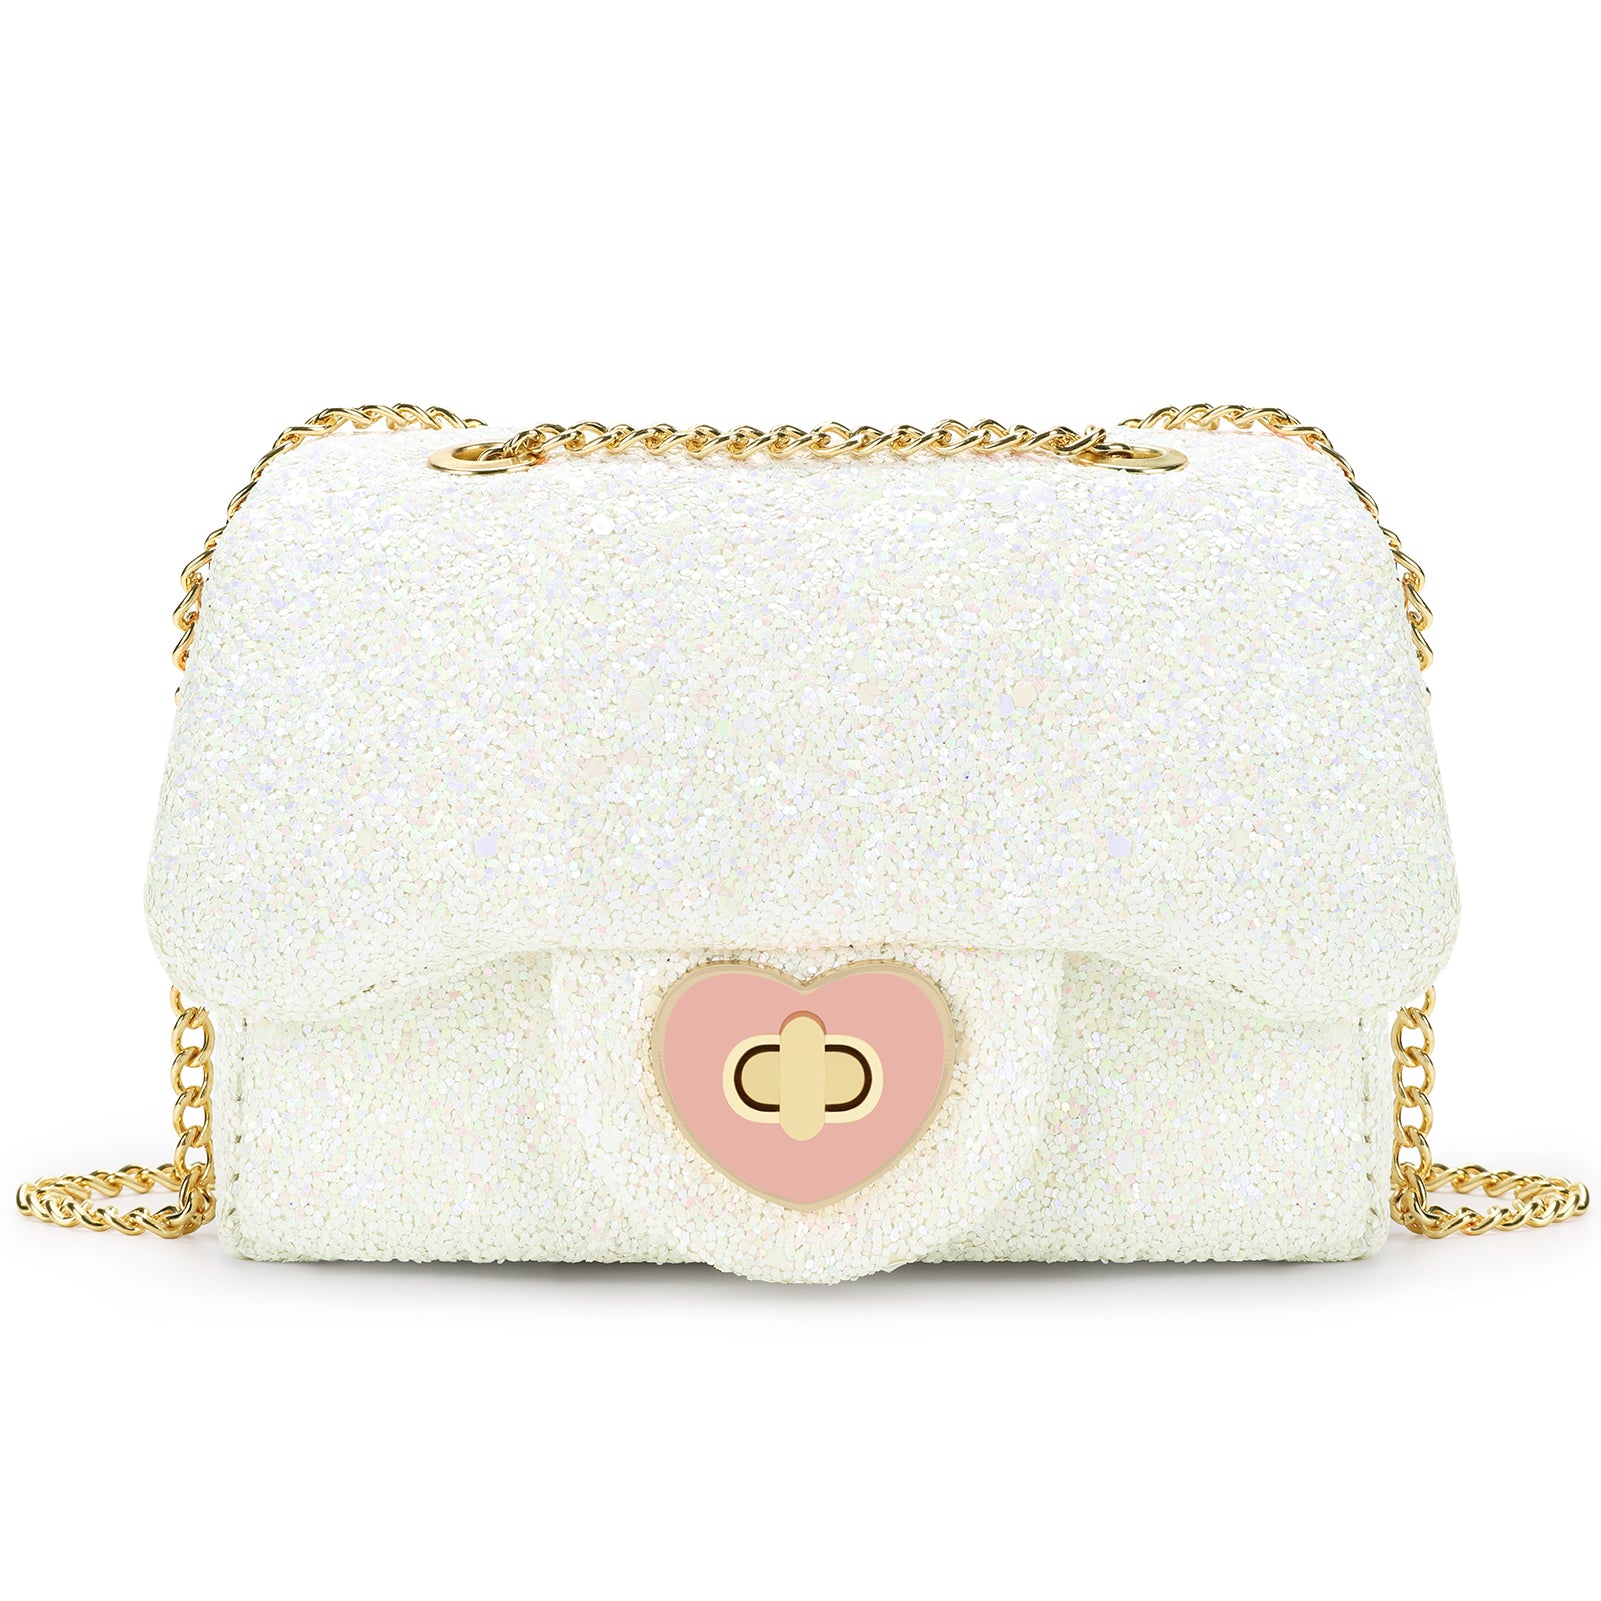 Little Girls Princess Purses Cute Crossbody Bag Handbag for Kids Toddler(Pink)  - Walmart.com